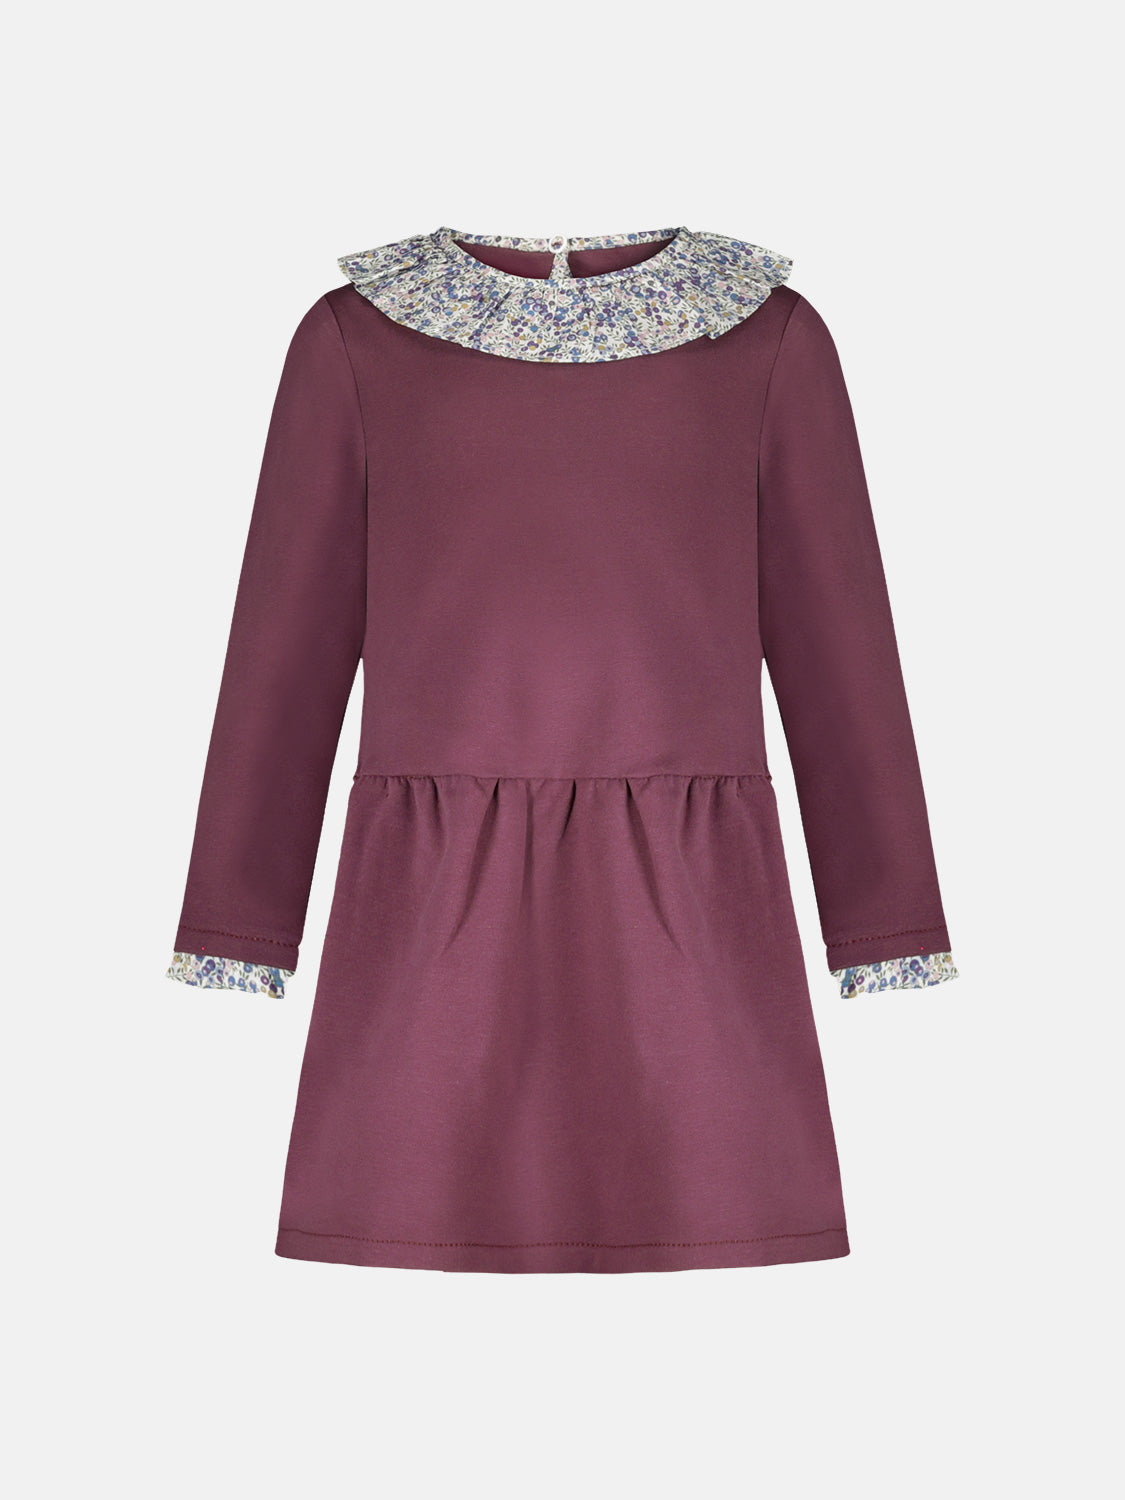 Sweatshirt Dress C/rouche Aubergine